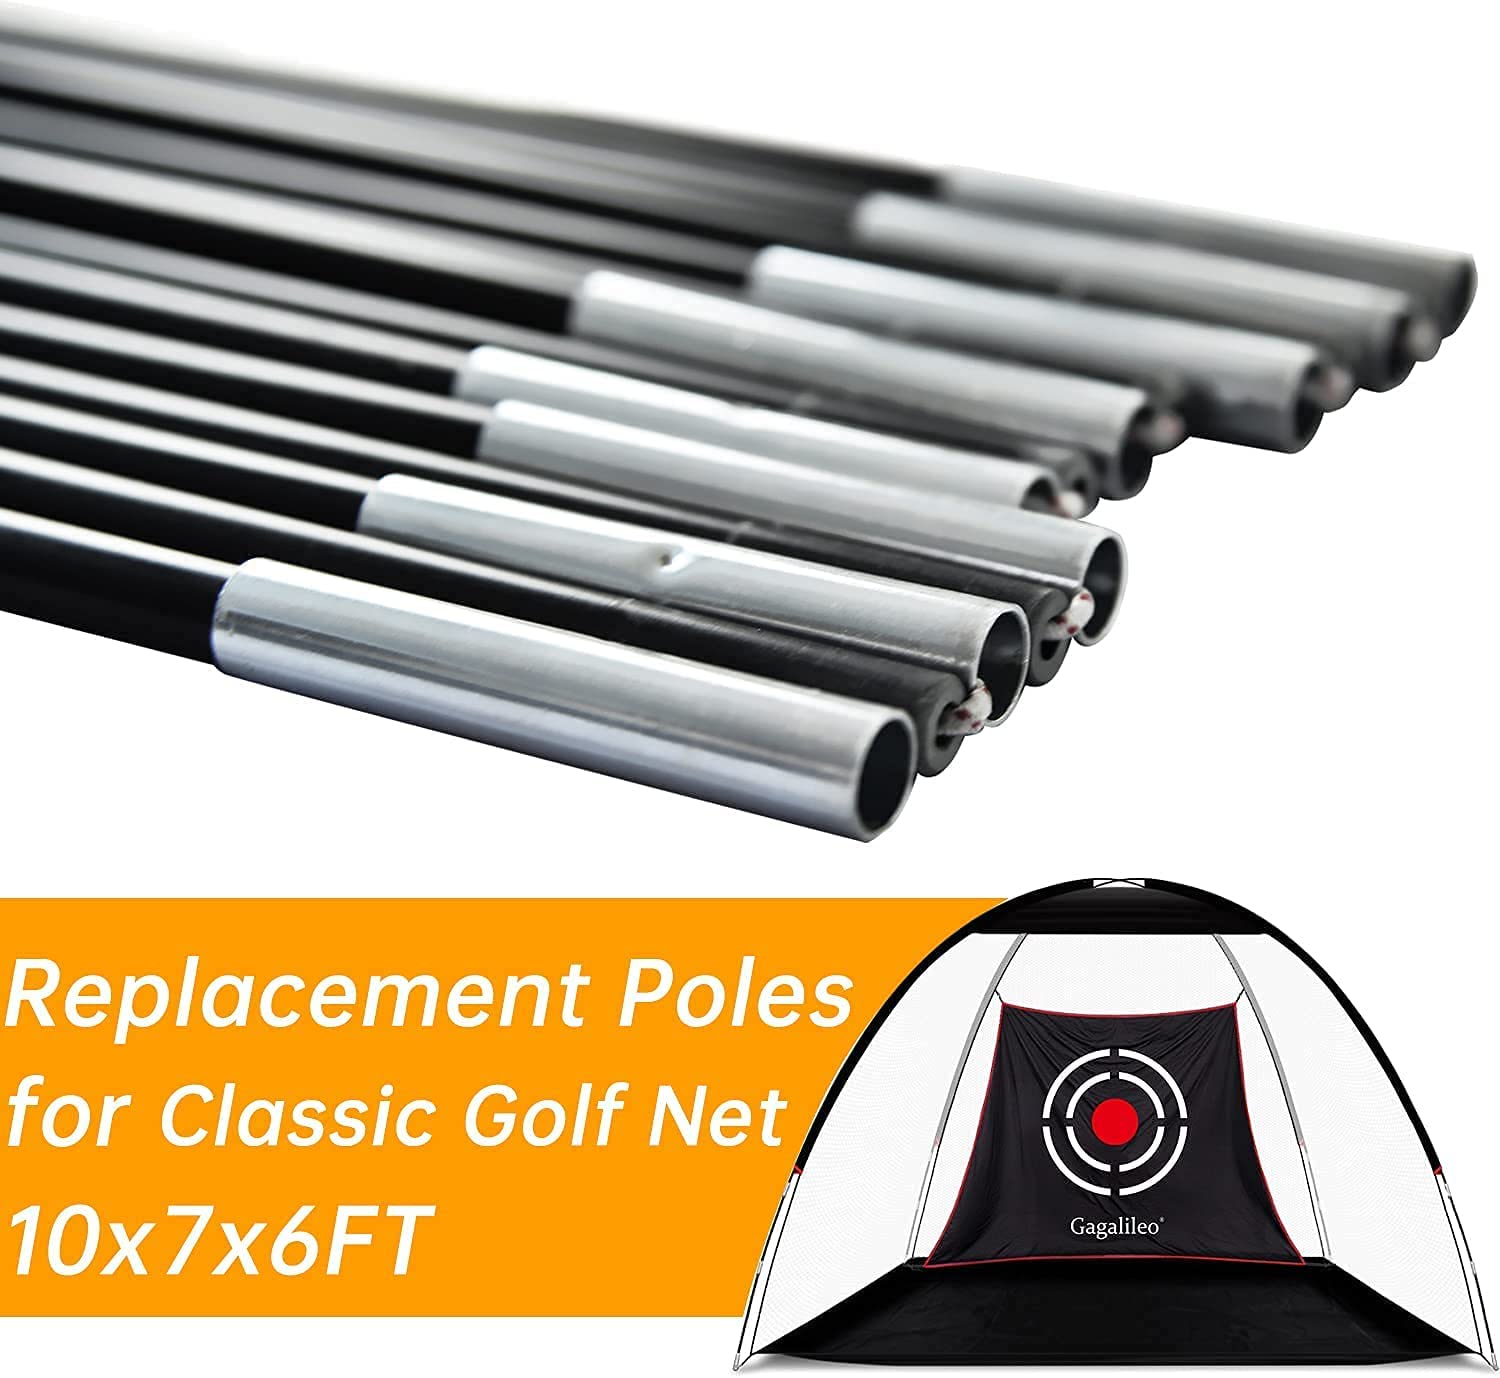 Gagalileo Golf Ersatz-Geradestangen für 10x7x6FT Golfnetz im klassischen Stil, Fiberglas-Ersatzstangen 2 Stück, GG-0003P